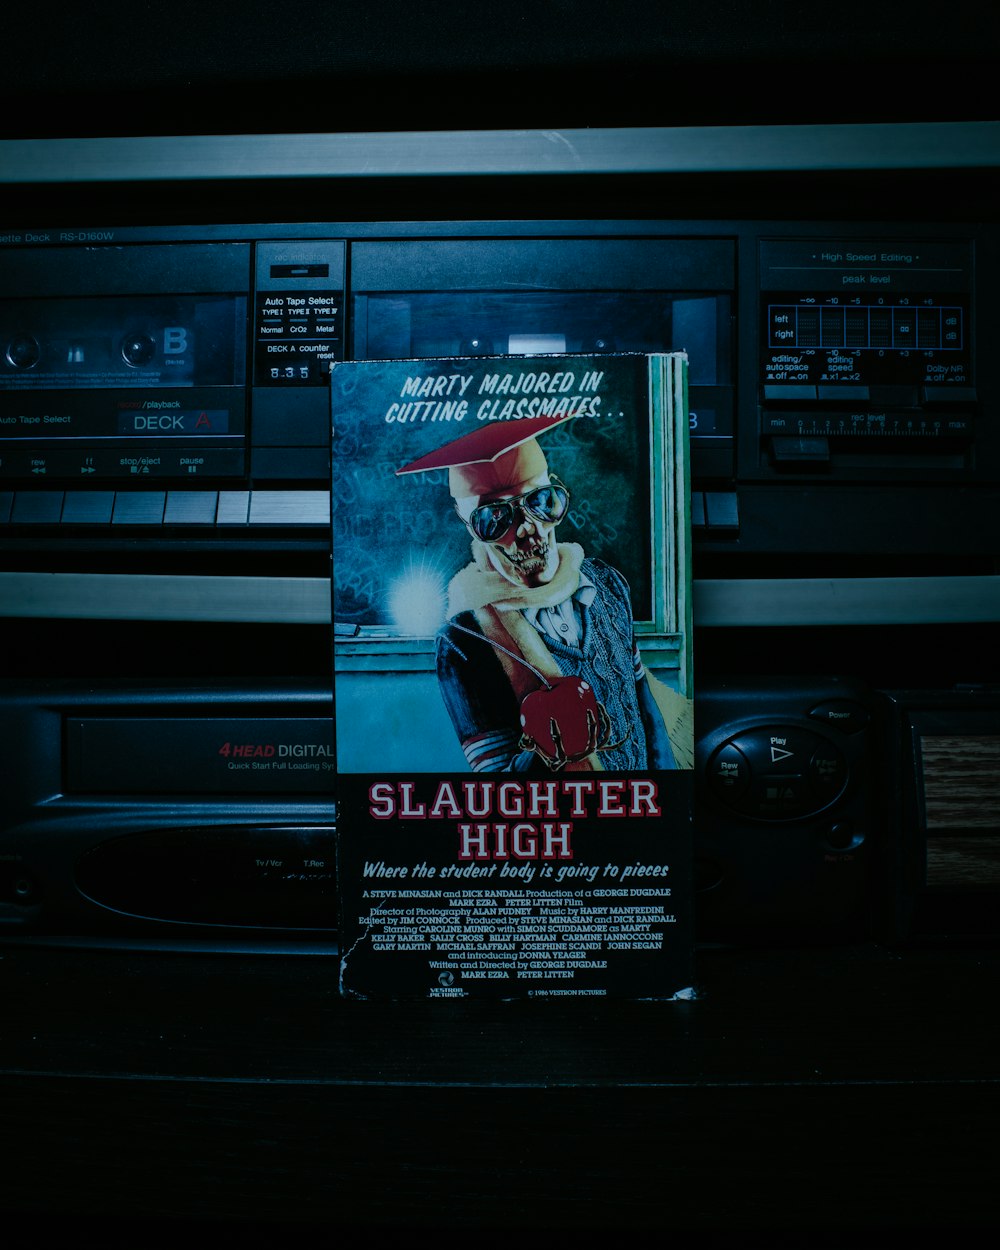 Une affiche de film sur un lecteur CD dans une pièce sombre